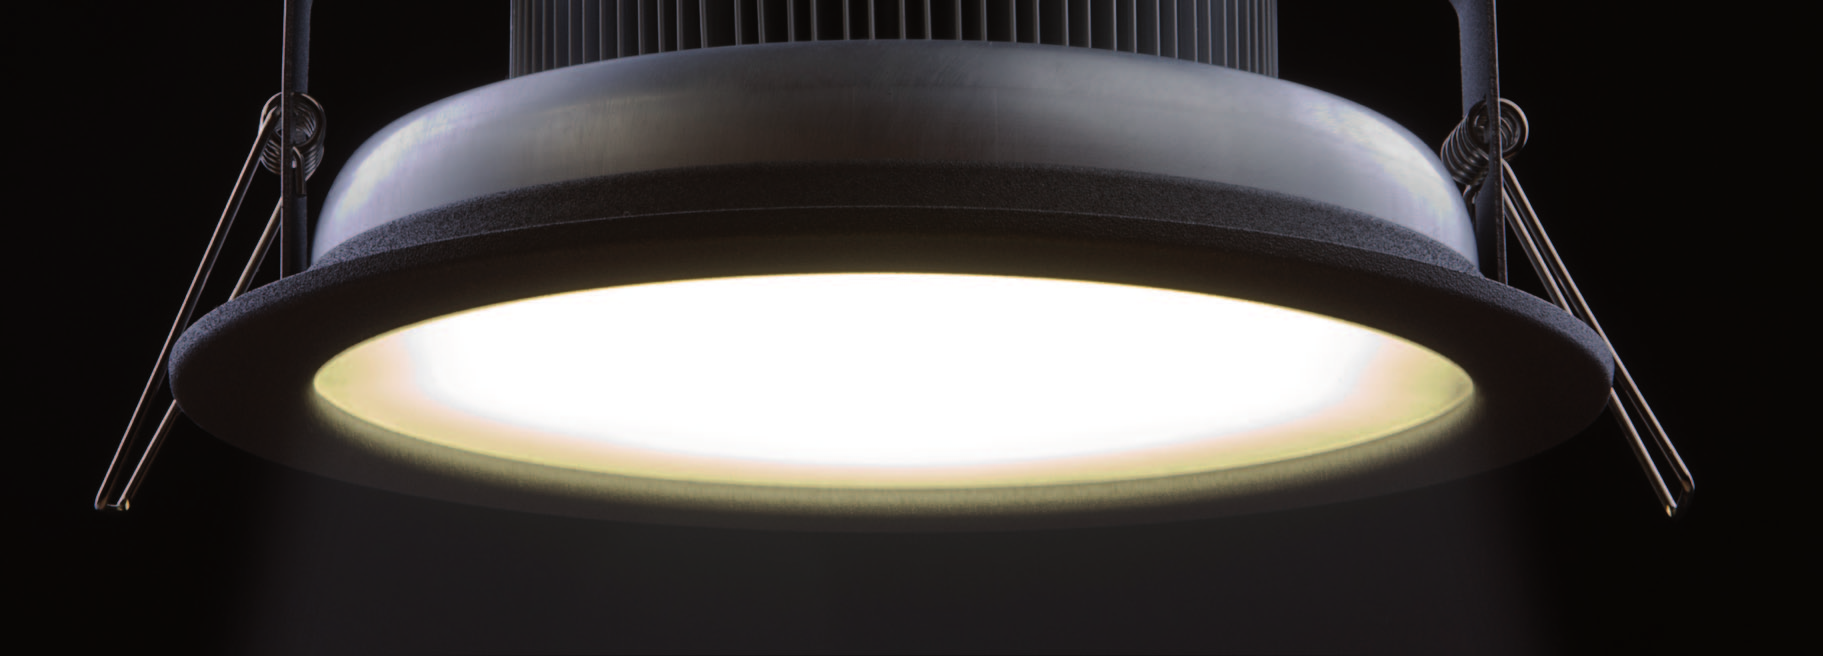 LED-Downlights [Einbauleuchten] Mit unseren LED Downlights können Sie komplexe Licht Konzepte in unterschiedlichen Bereichen verwirklichen oder besondere Licht Akzente setzen.